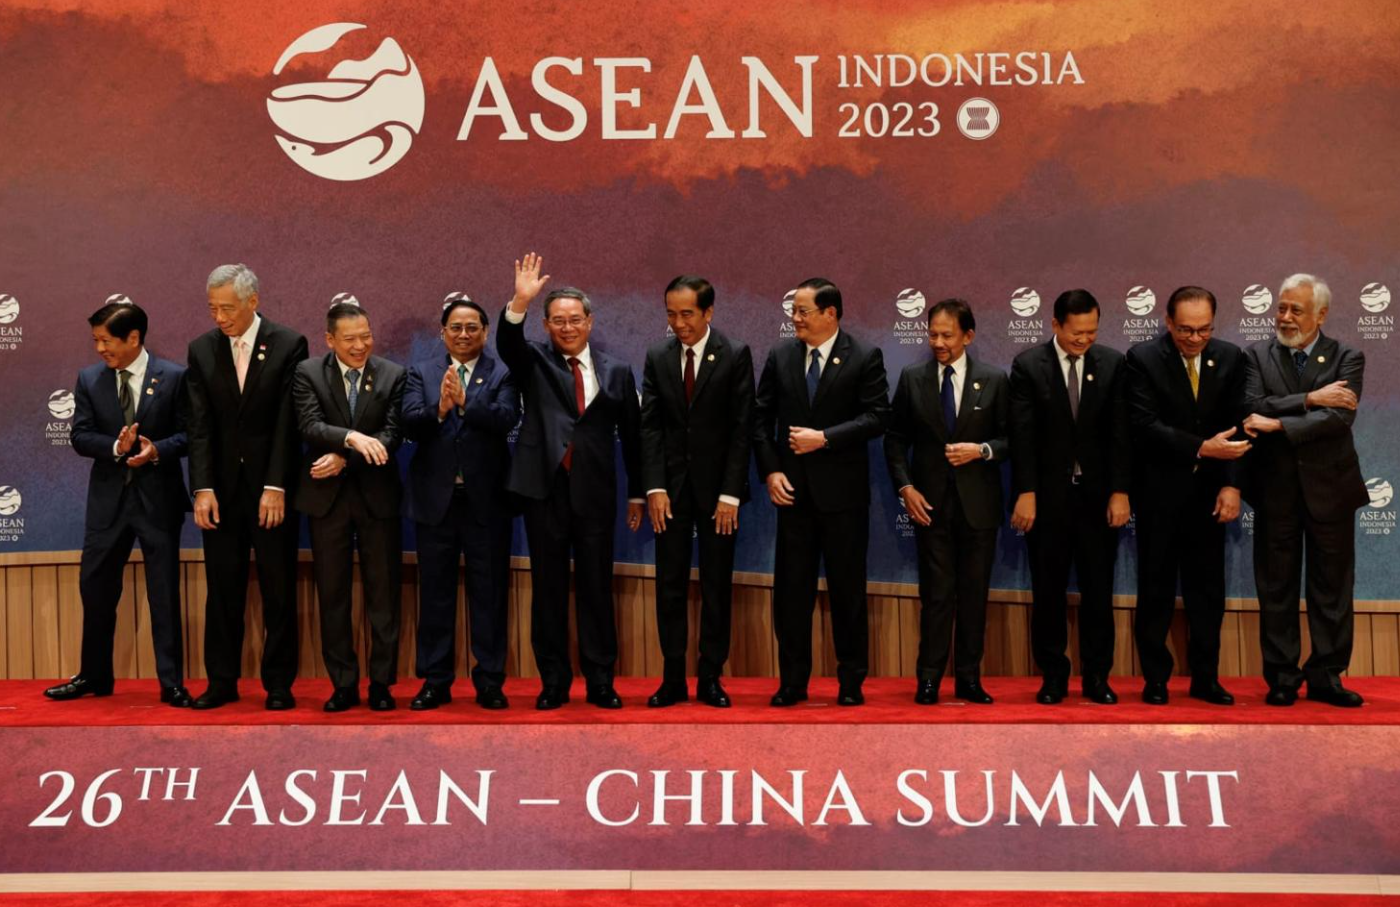 Tujuan ASEAN: Membangun Kerjasama Ekonomi dan Politik di Asia Tenggara